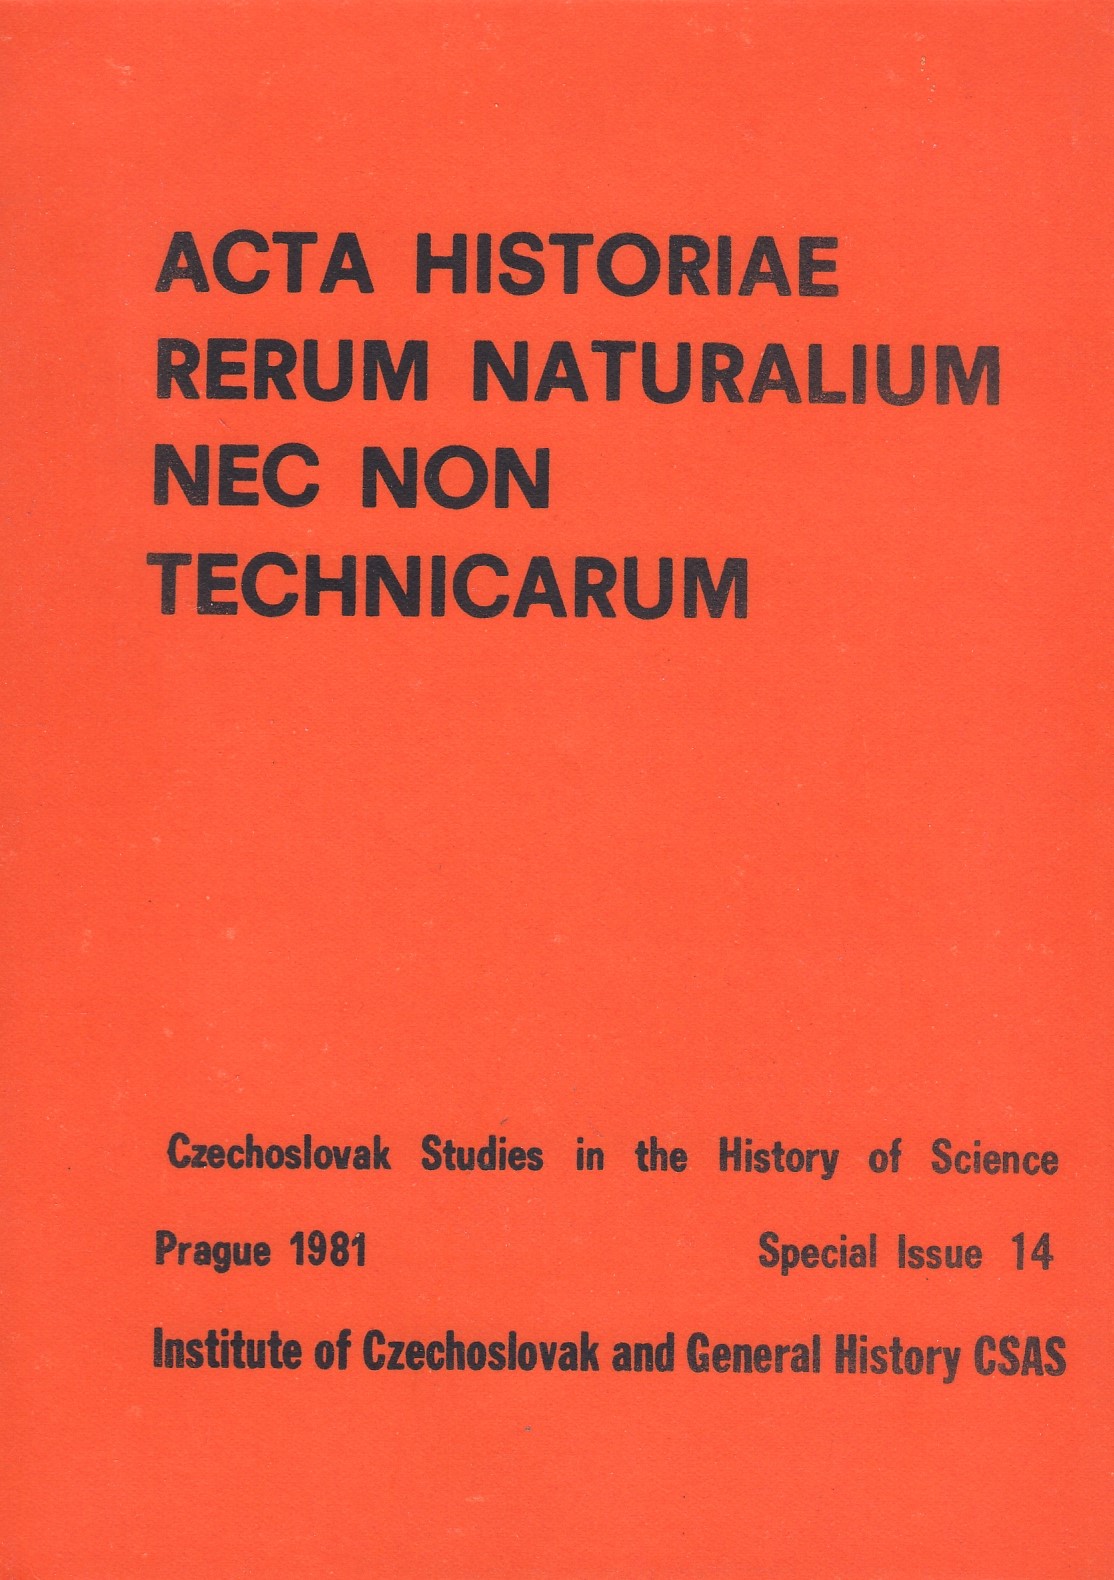 Acta historiae rerum naturalium nec non technicarum